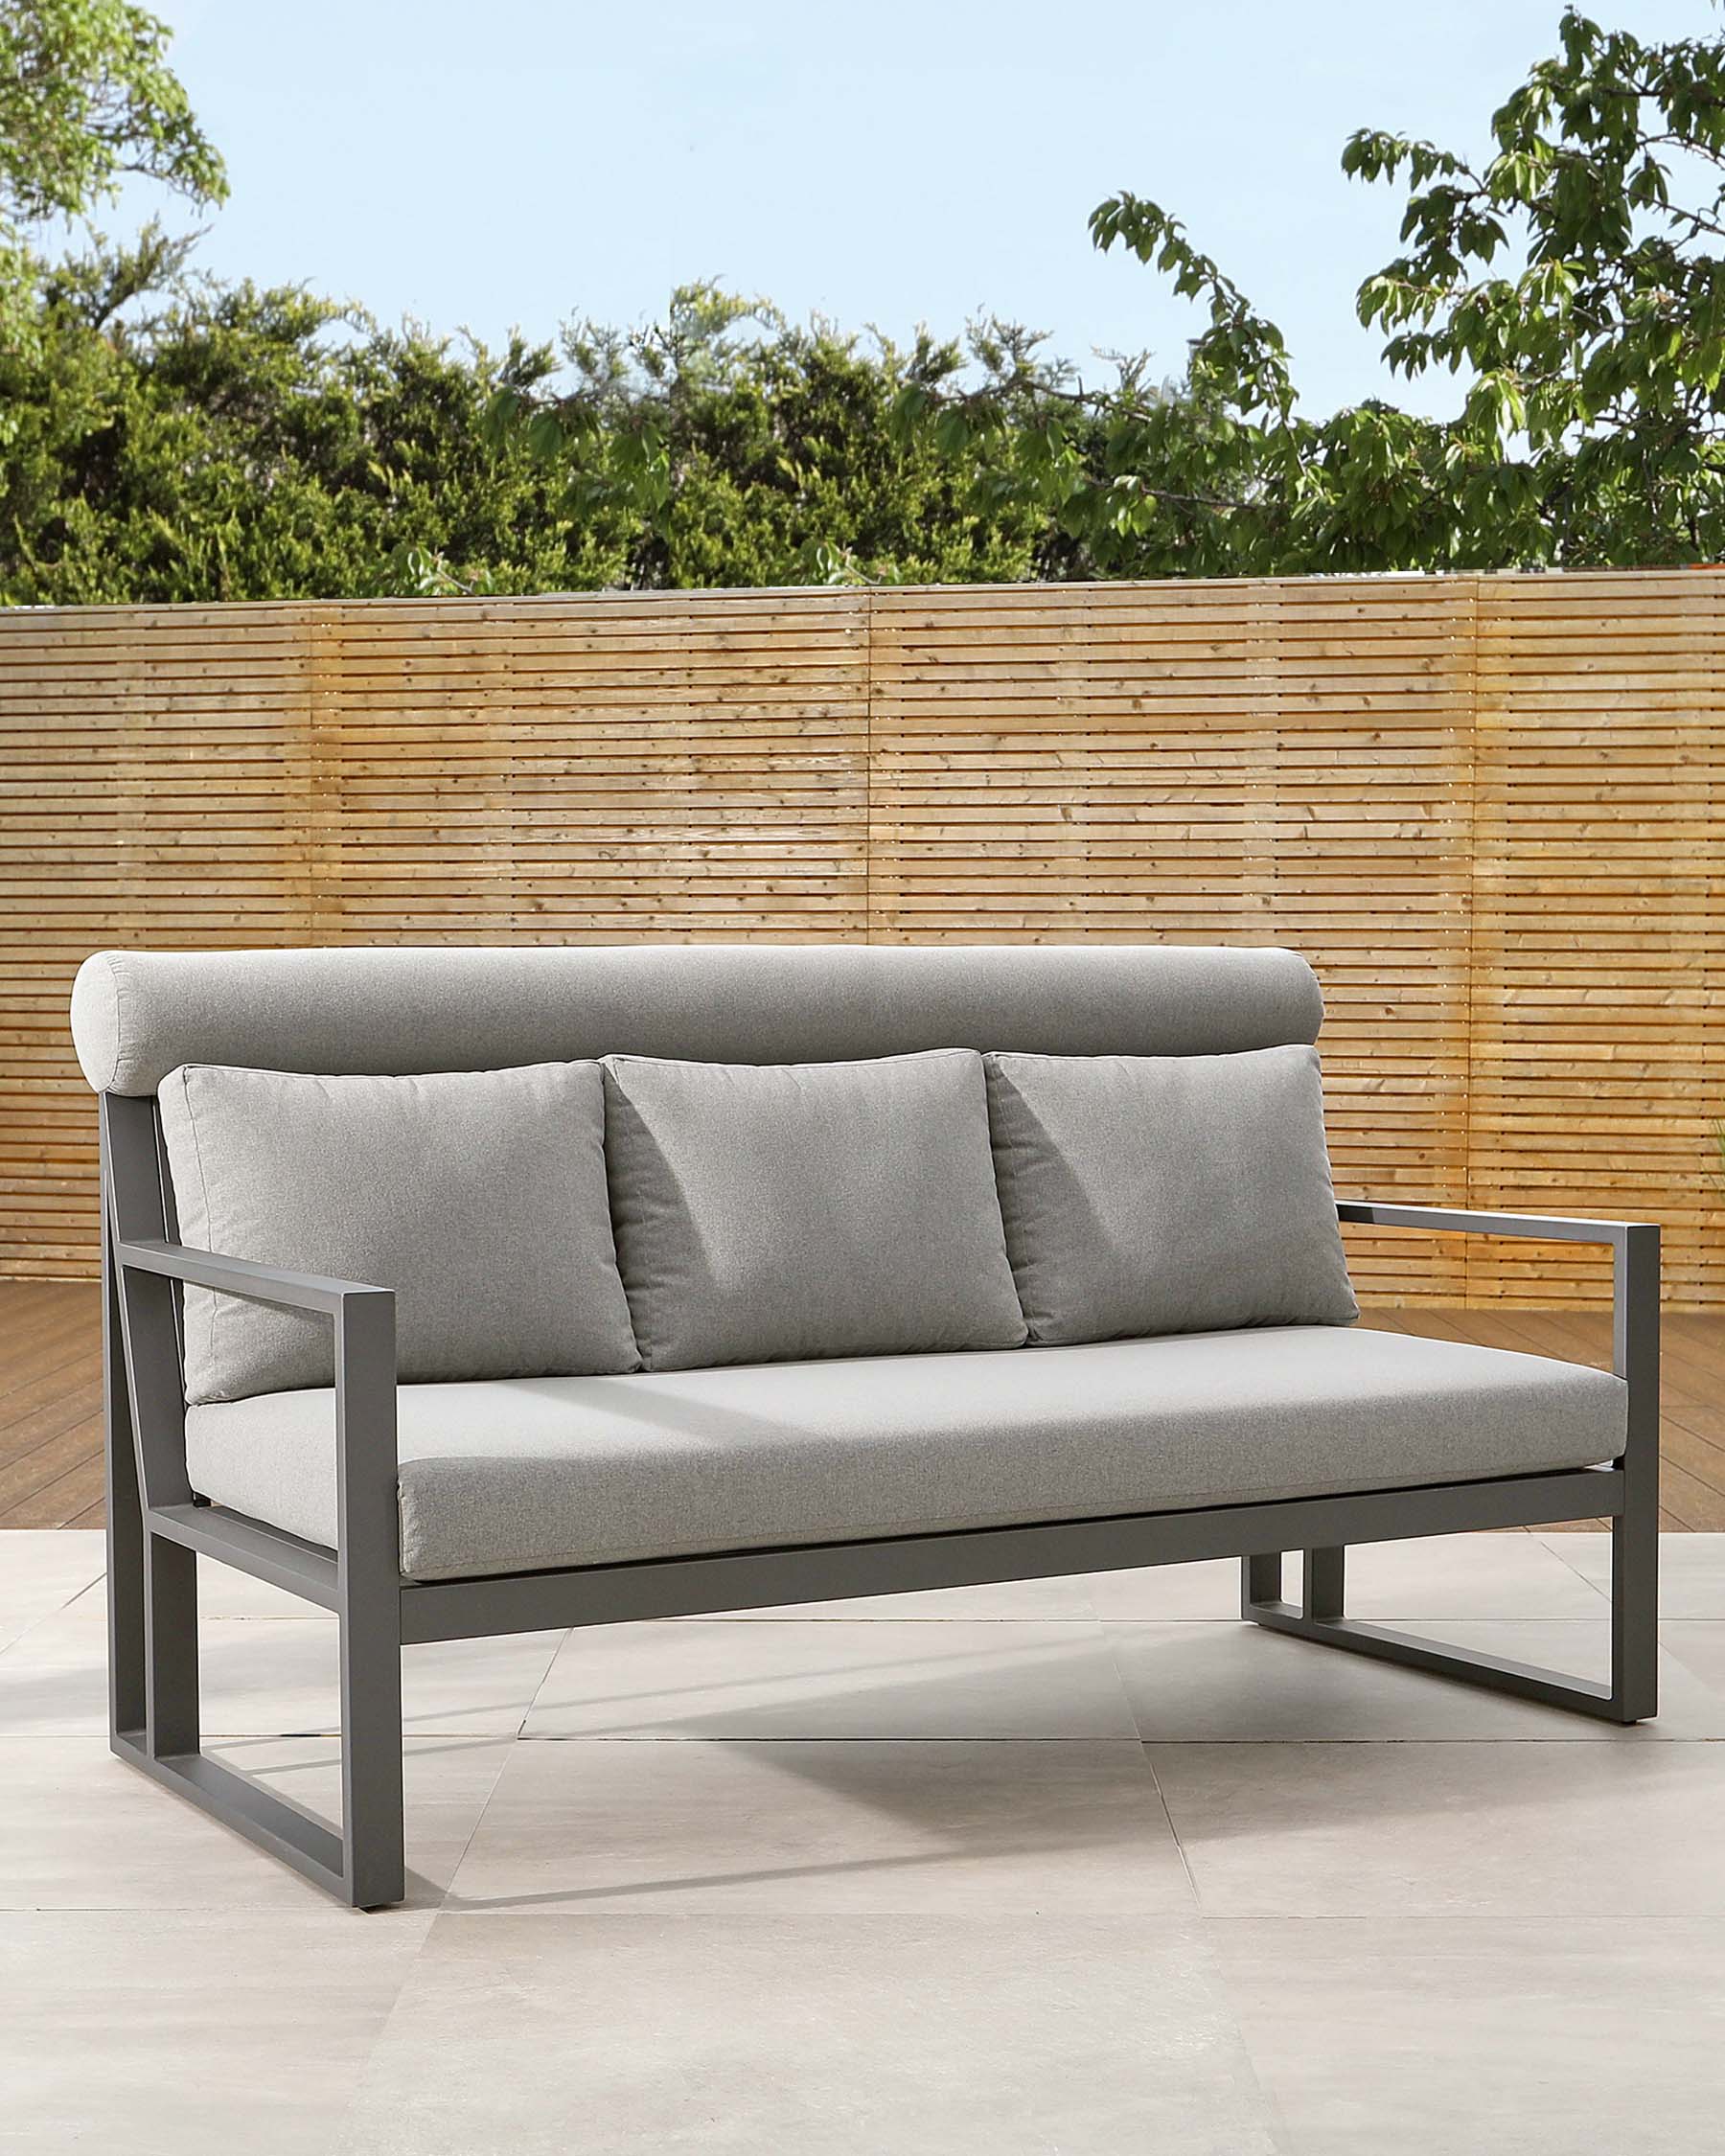 Verano Grey 3 Seater Garden Sofa Bench